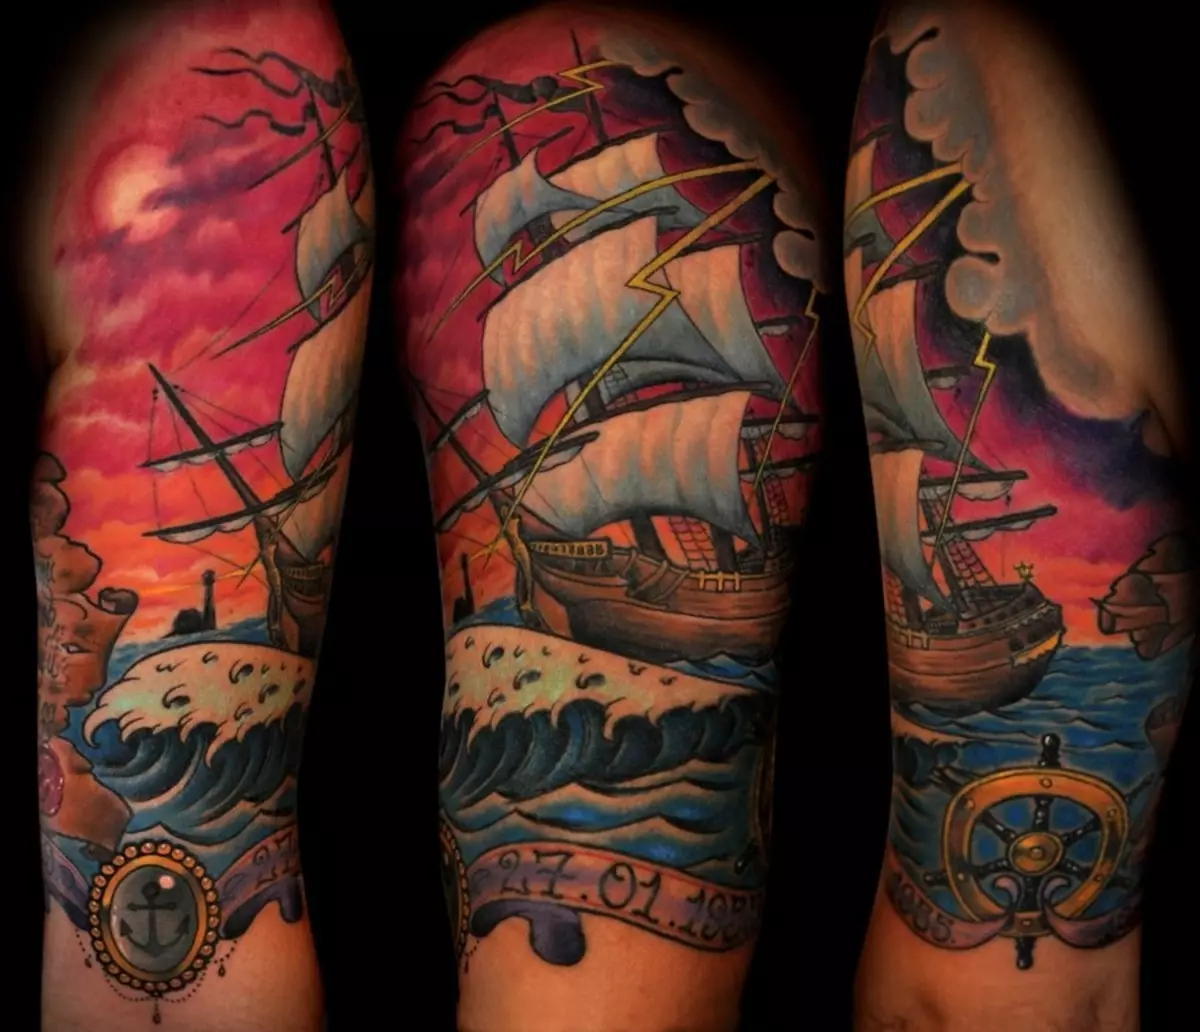 Tattoo na meli: michoro ya sailboats na thamani ya meli na sails, tattoos kwa mkono na mguu, meli pirate meli kwa wanaume na chaguzi nyingine 14129_55